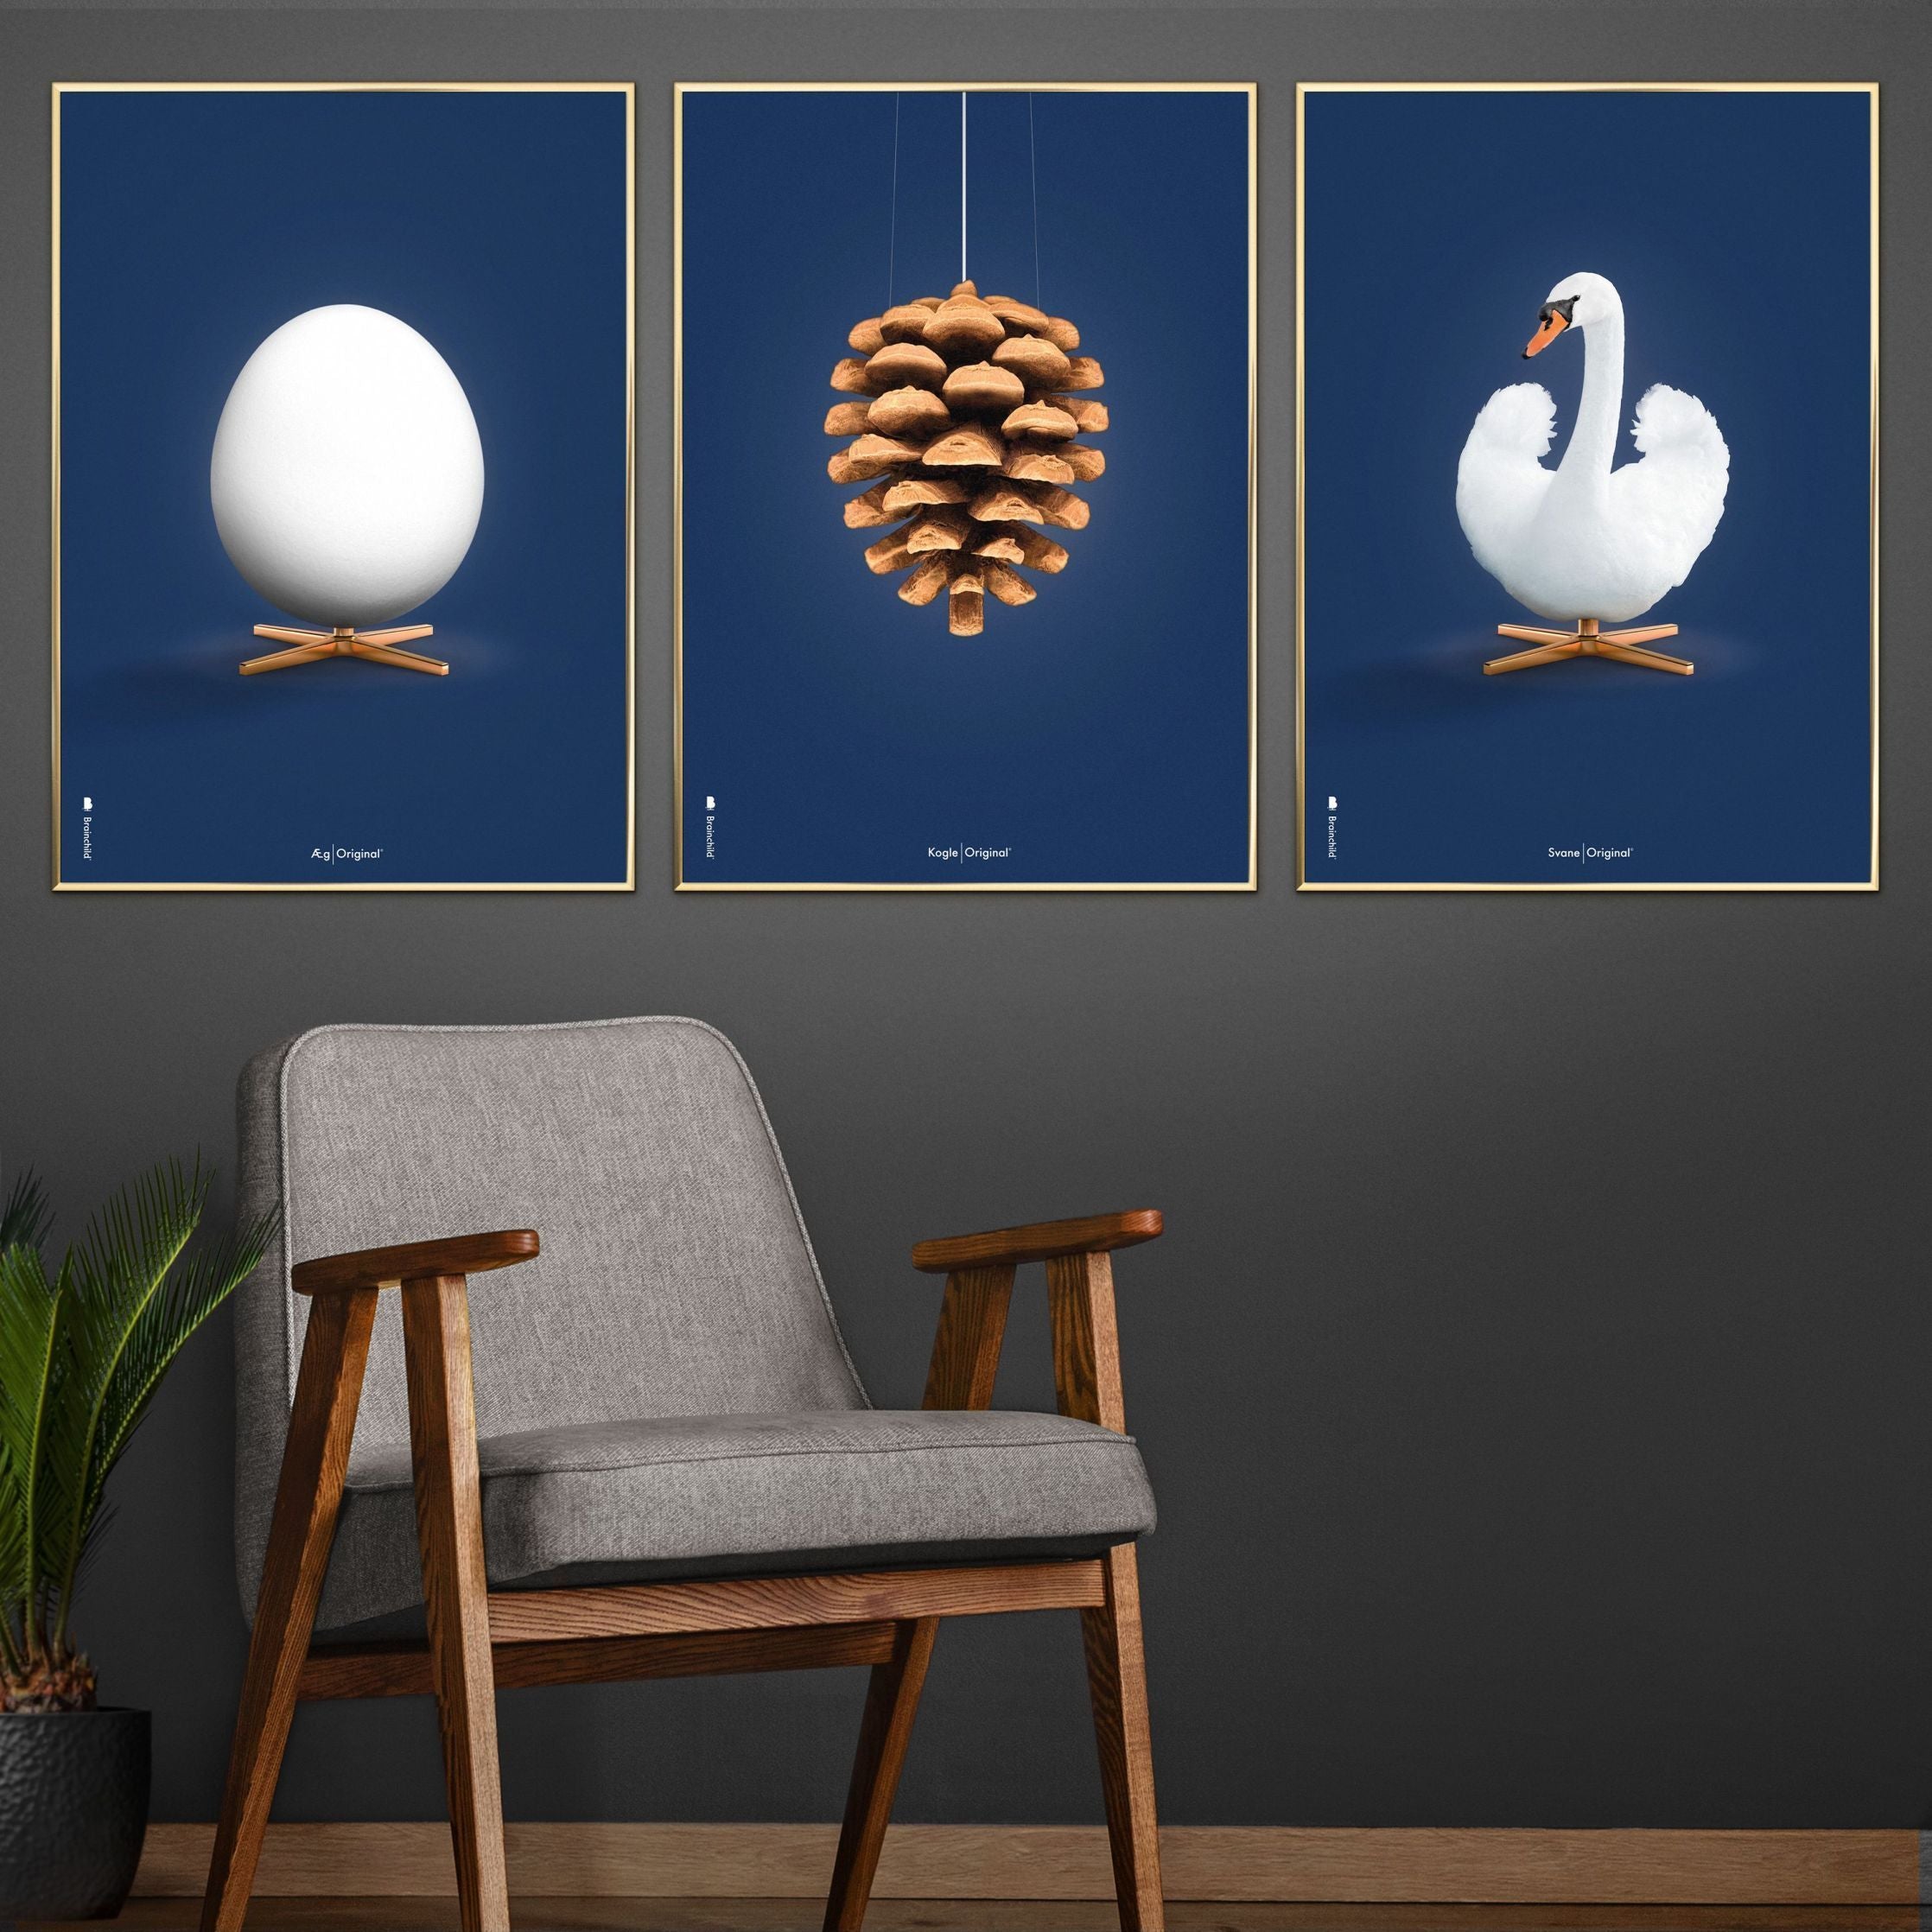 Pomysły Swan Classic Plakat bez ramki 70 x100 cm, ciemnoniebieskie tło